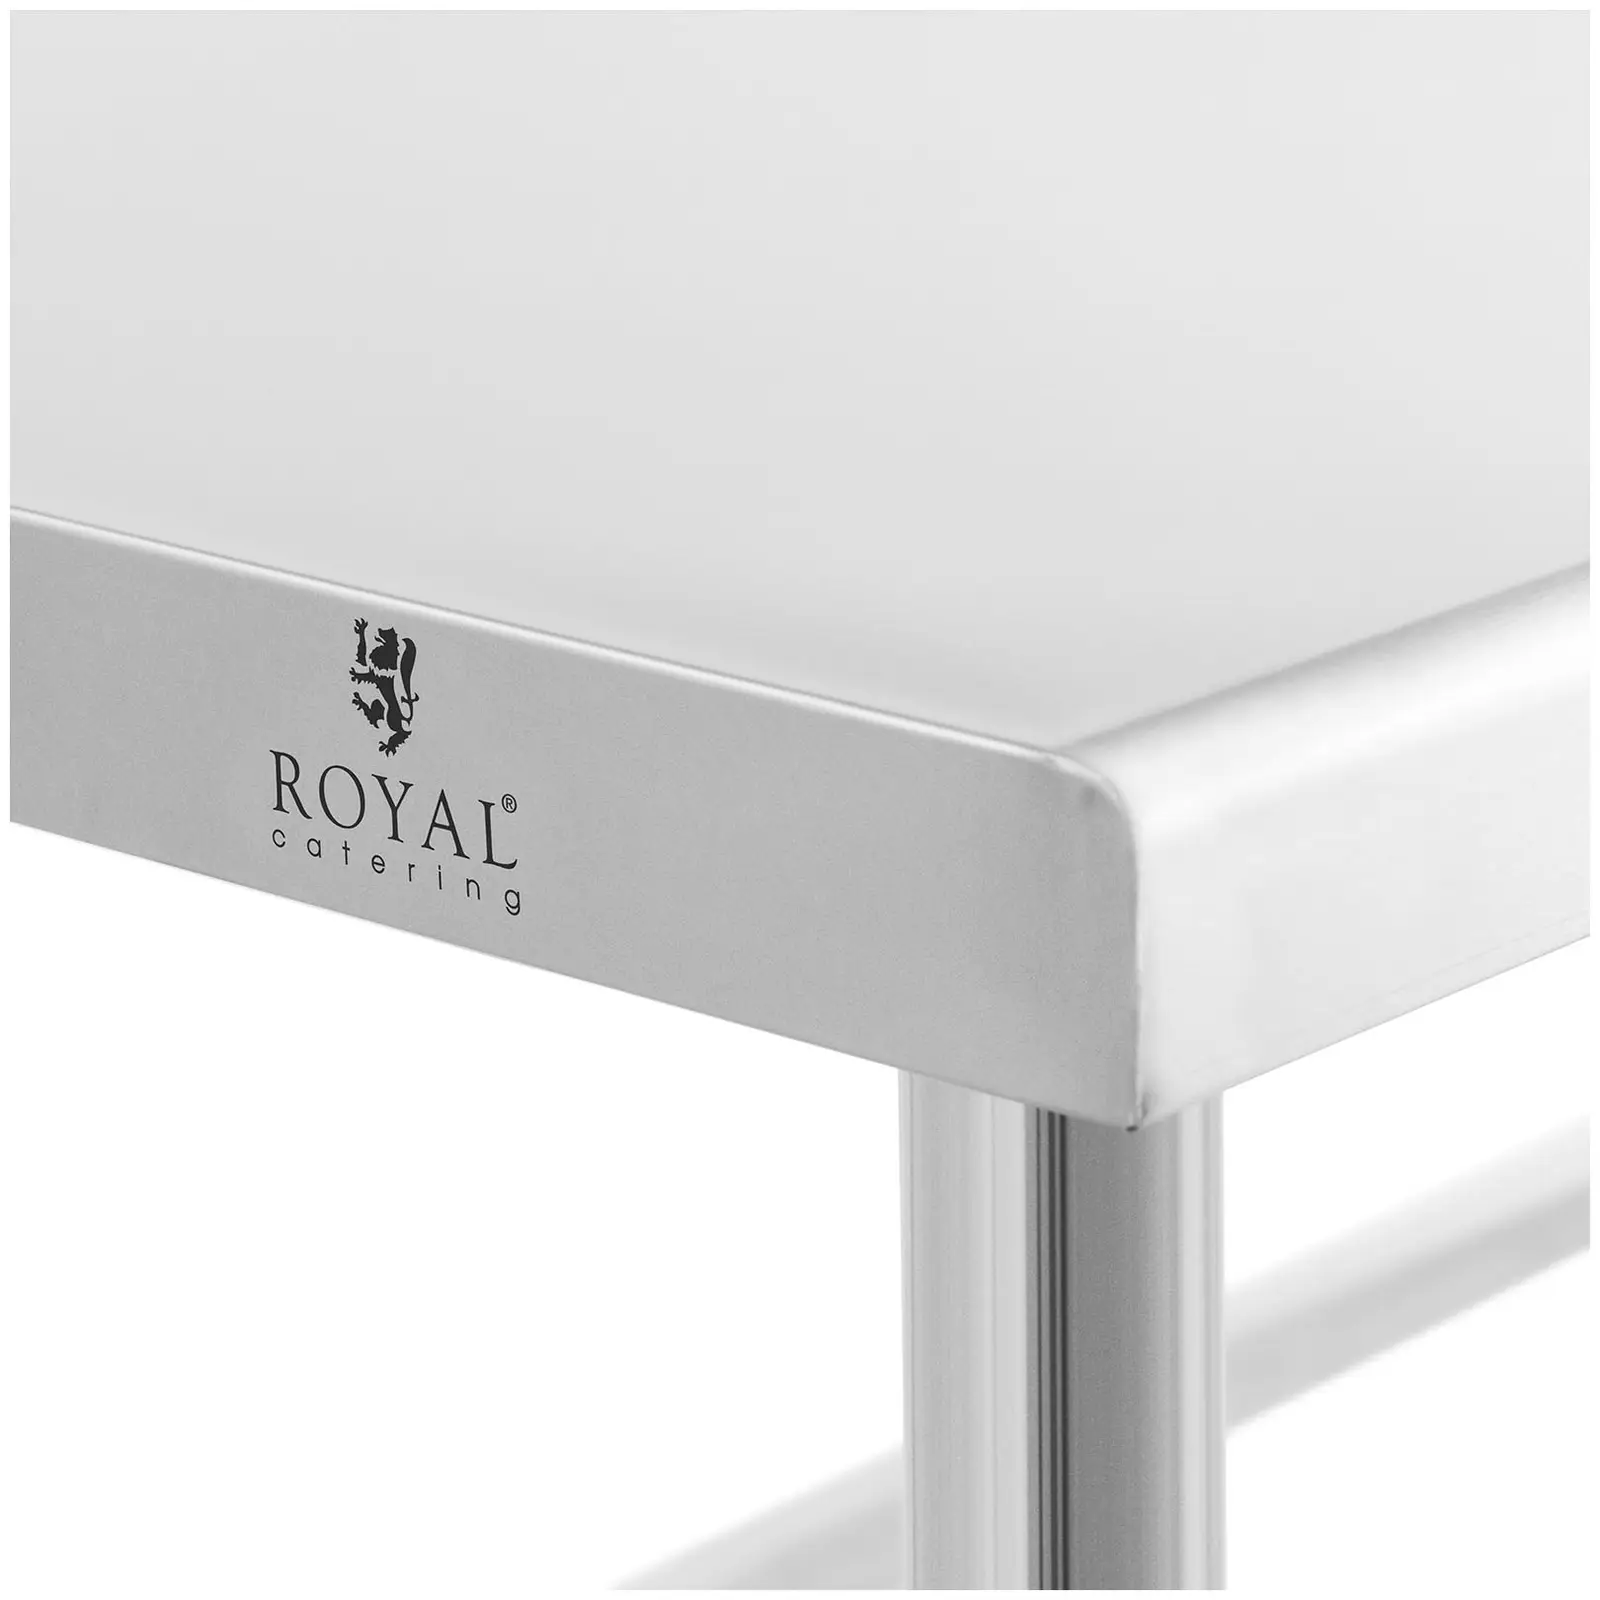 Table de travail inox - 180 x 60 cm - Dosseret - Capacité de 95 kg - Royal Catering